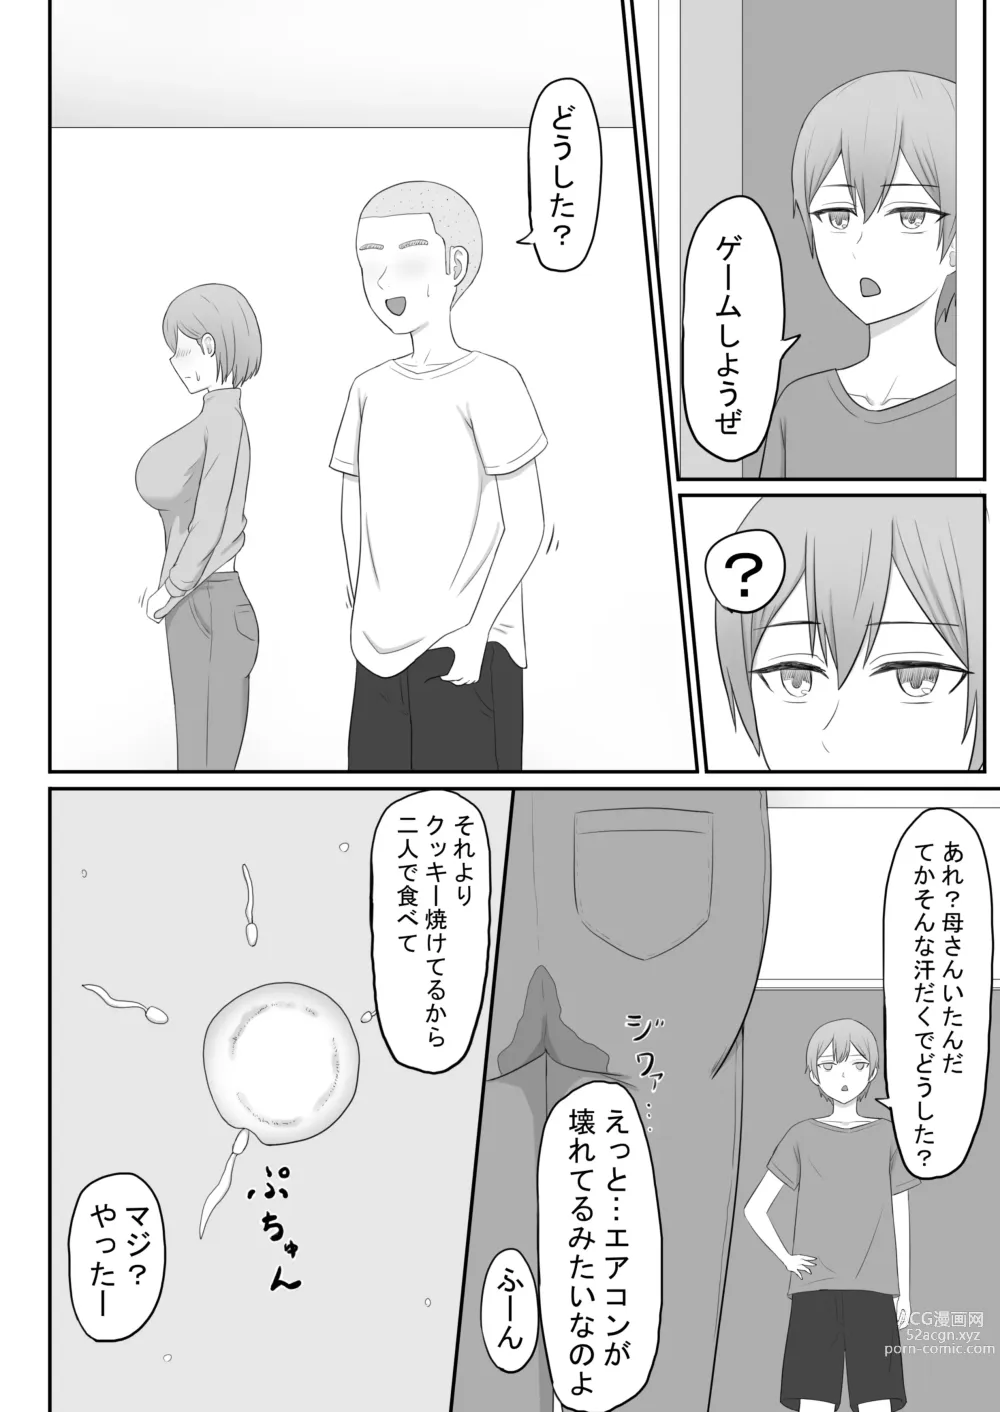 Page 26 of doujinshi Okaa-san wa Tomodachi no SeFri